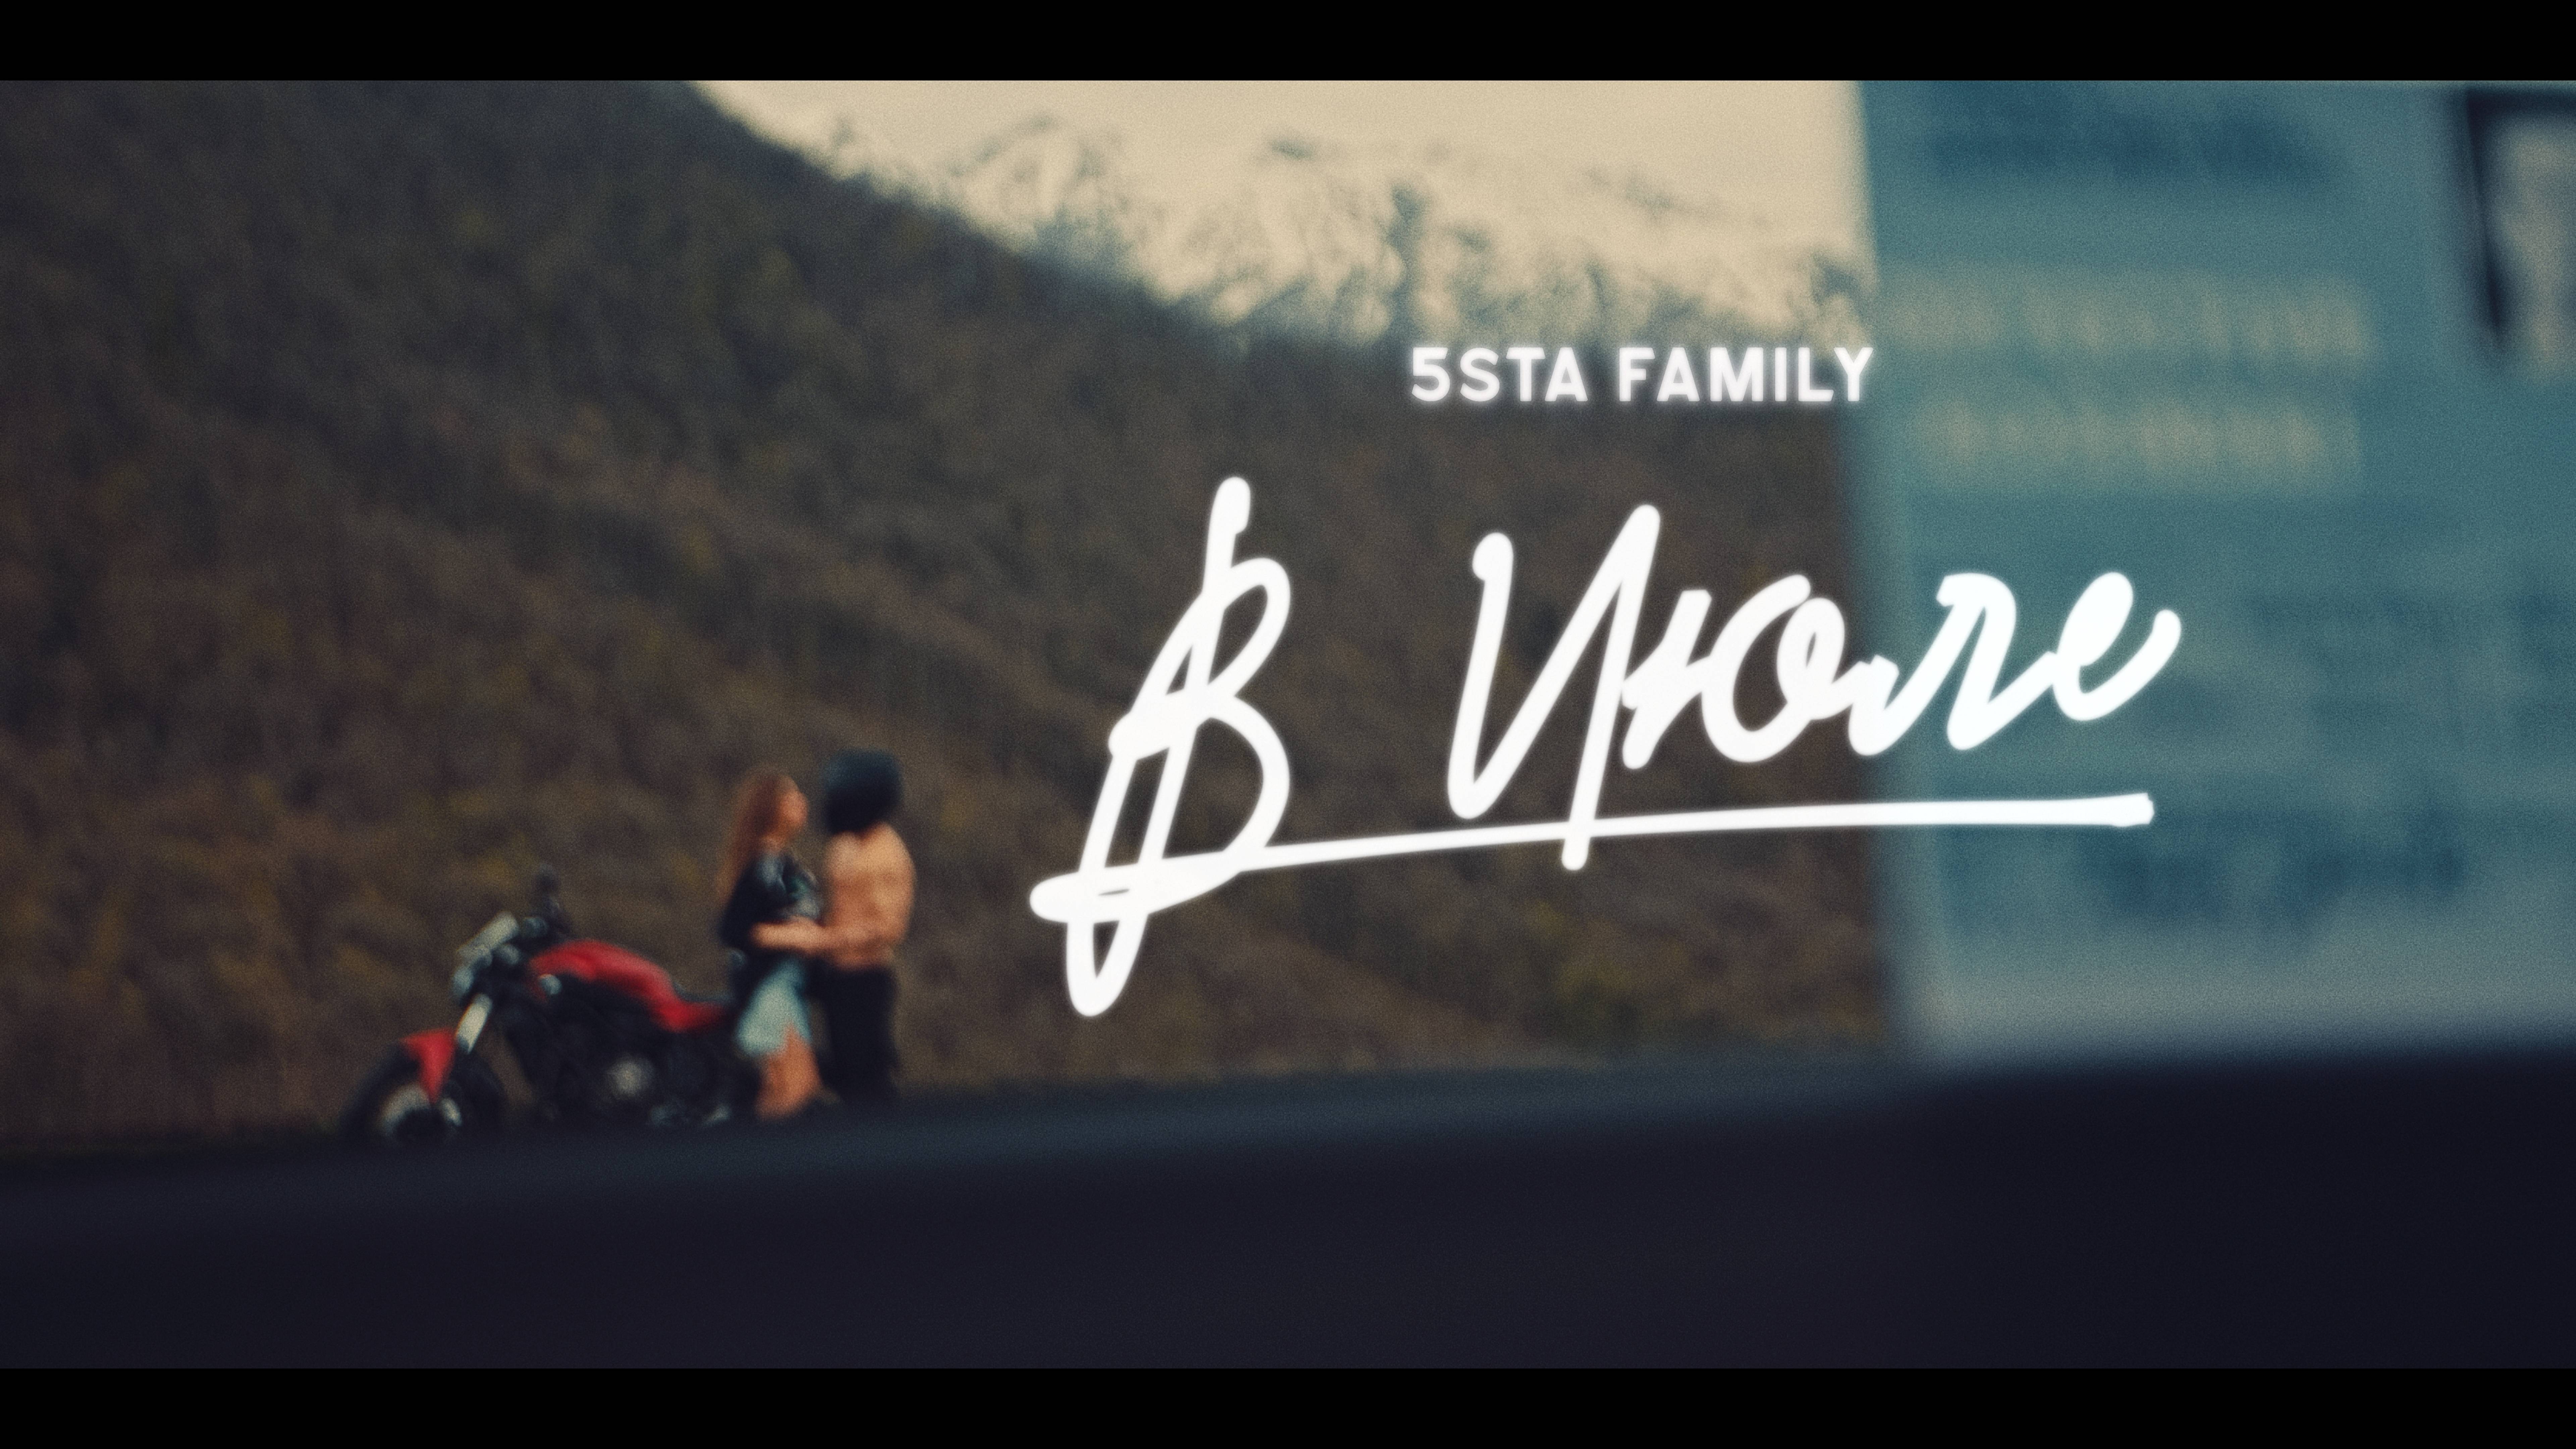 5sta Family - В июле (Премьера клипа)